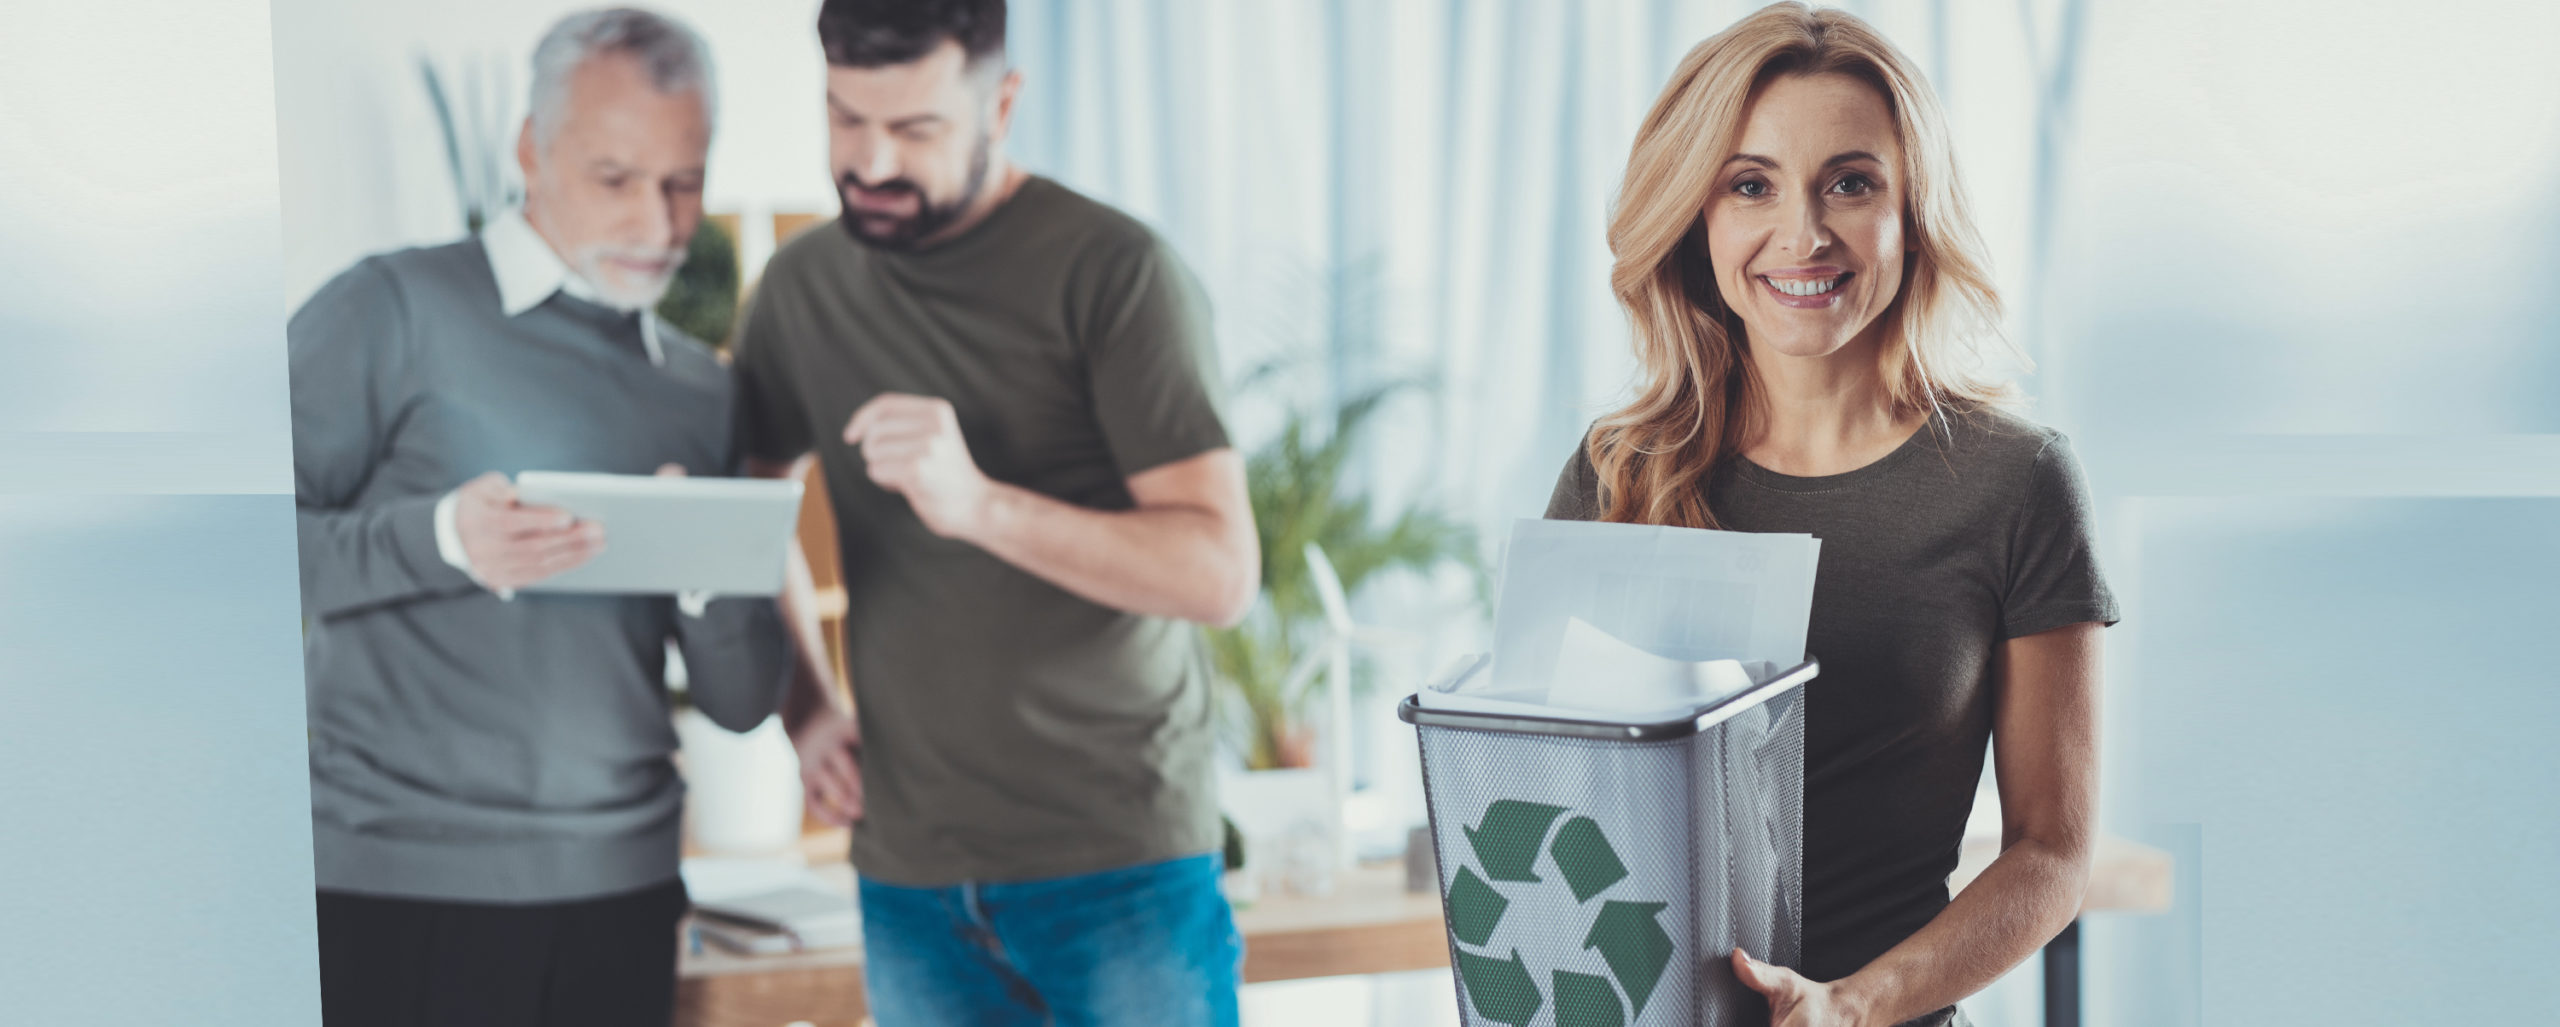 Como anda a separação e destinação do lixo em sua empresa?